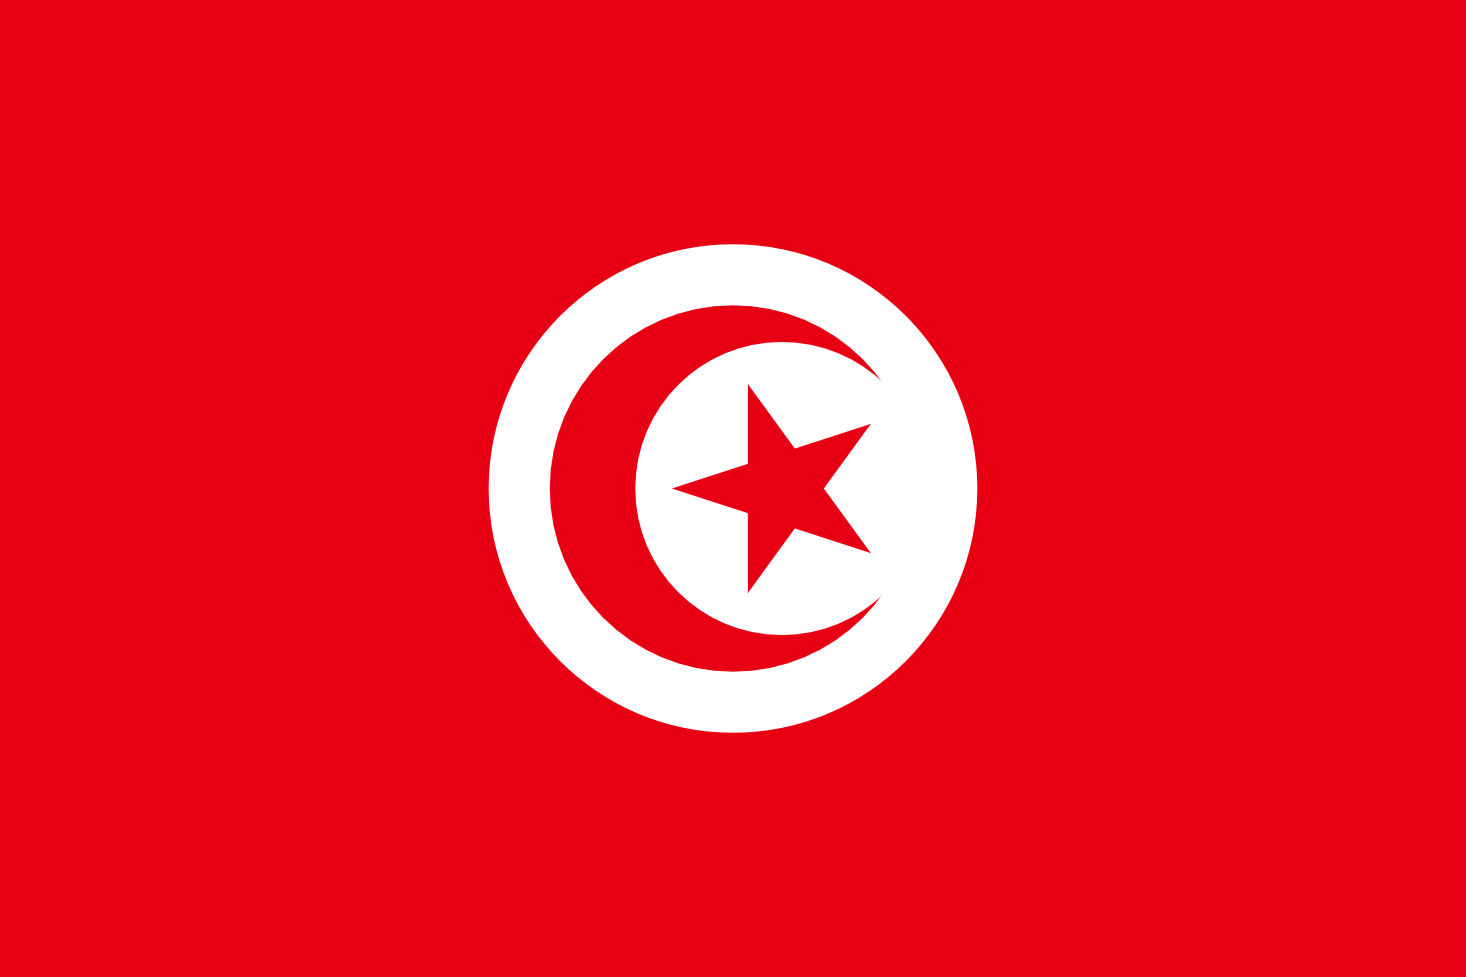 Imagem, bandeira do estado do estado da Tunísia - na resolucao de 1466x977 - África